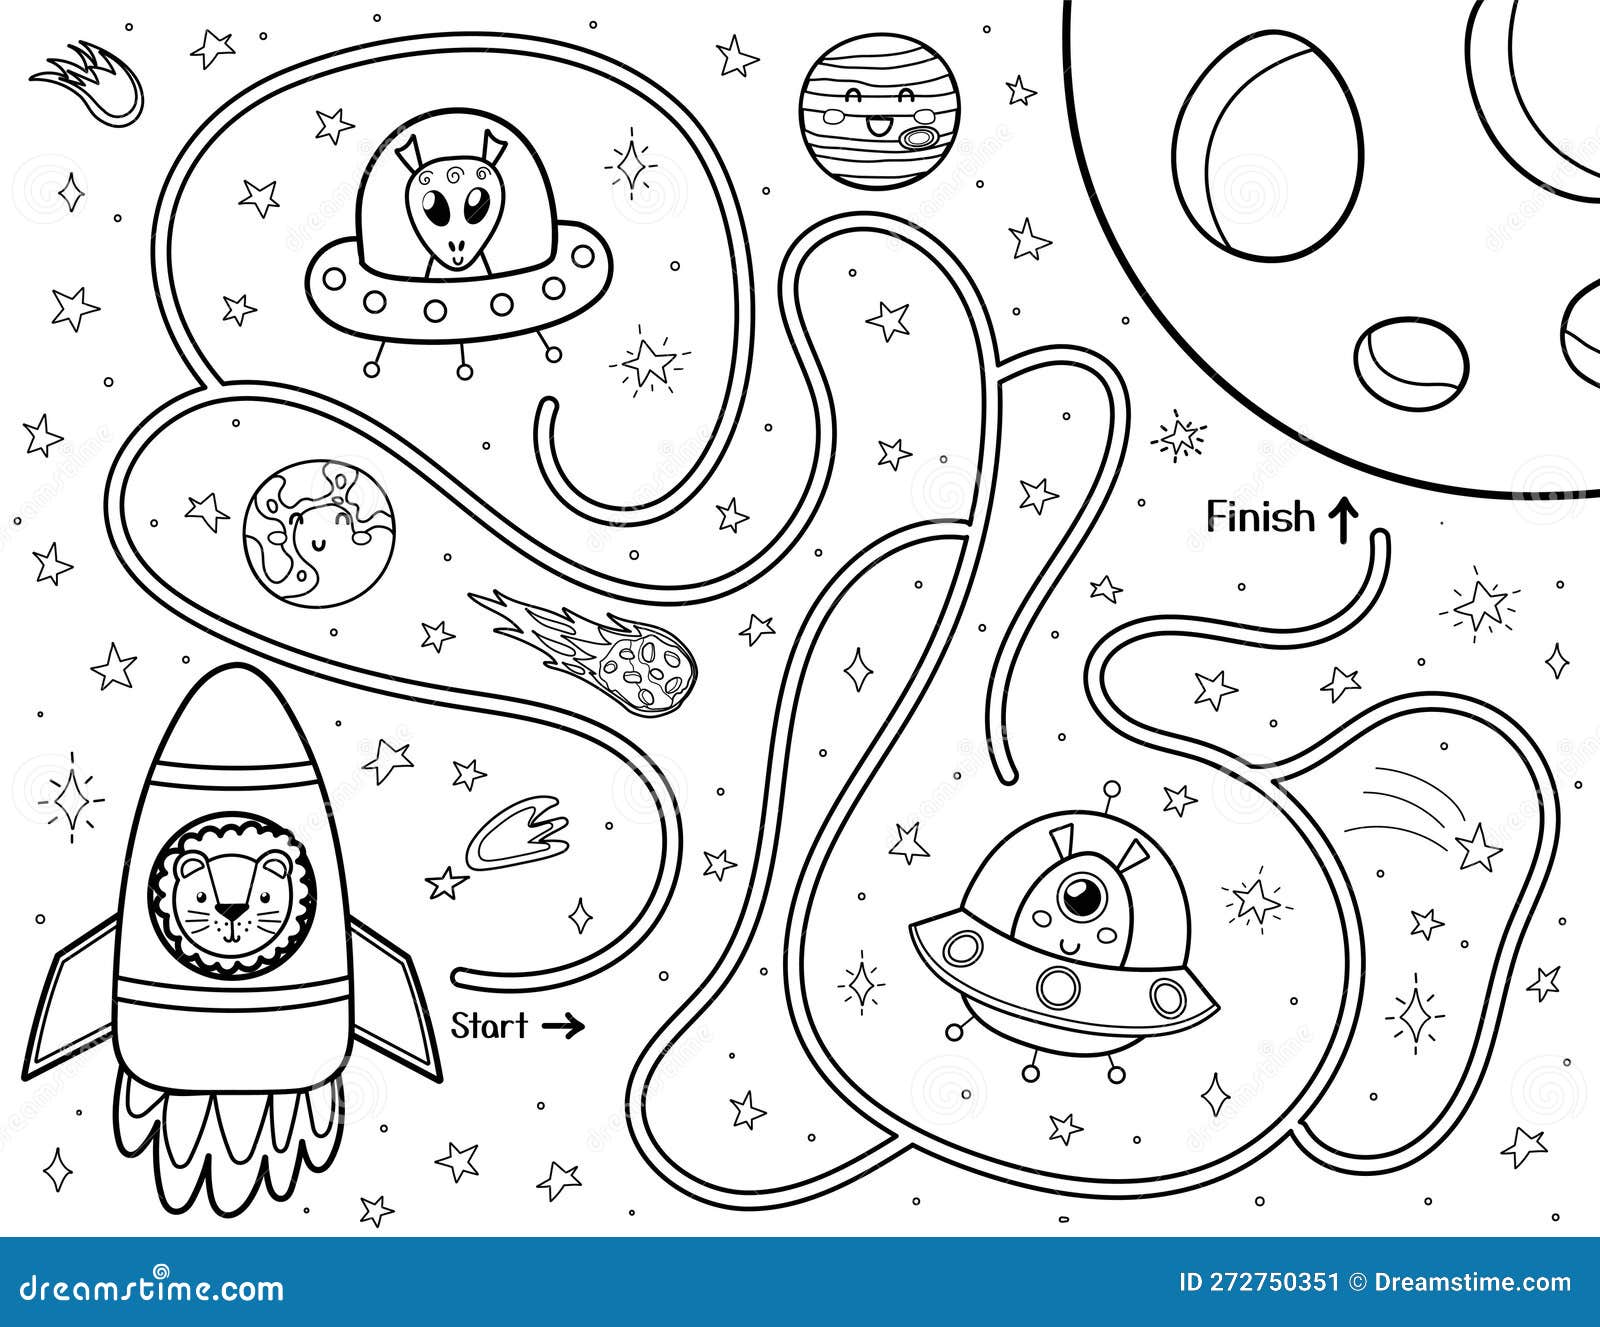 Ajude um zumbi fofo a encontrar o caminho para o túmulo. jogo de labirinto  de halloween para crianças em estilo cartoon